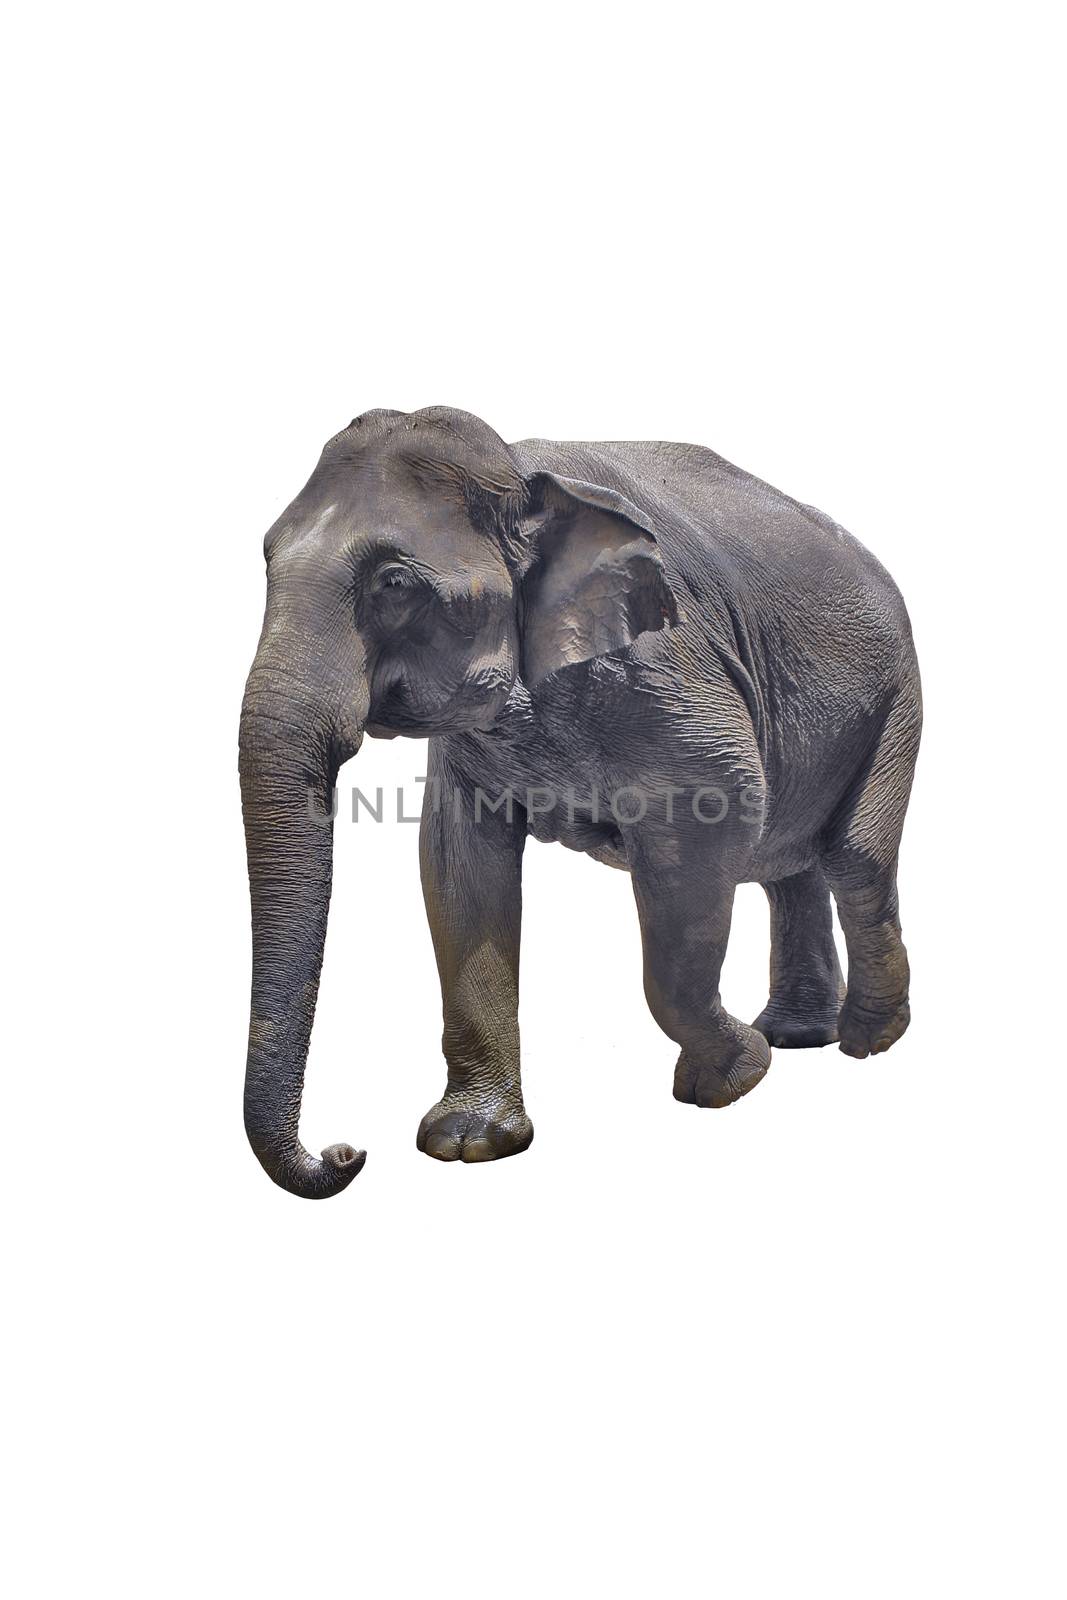 Elephant isolated on white background by haiderazim